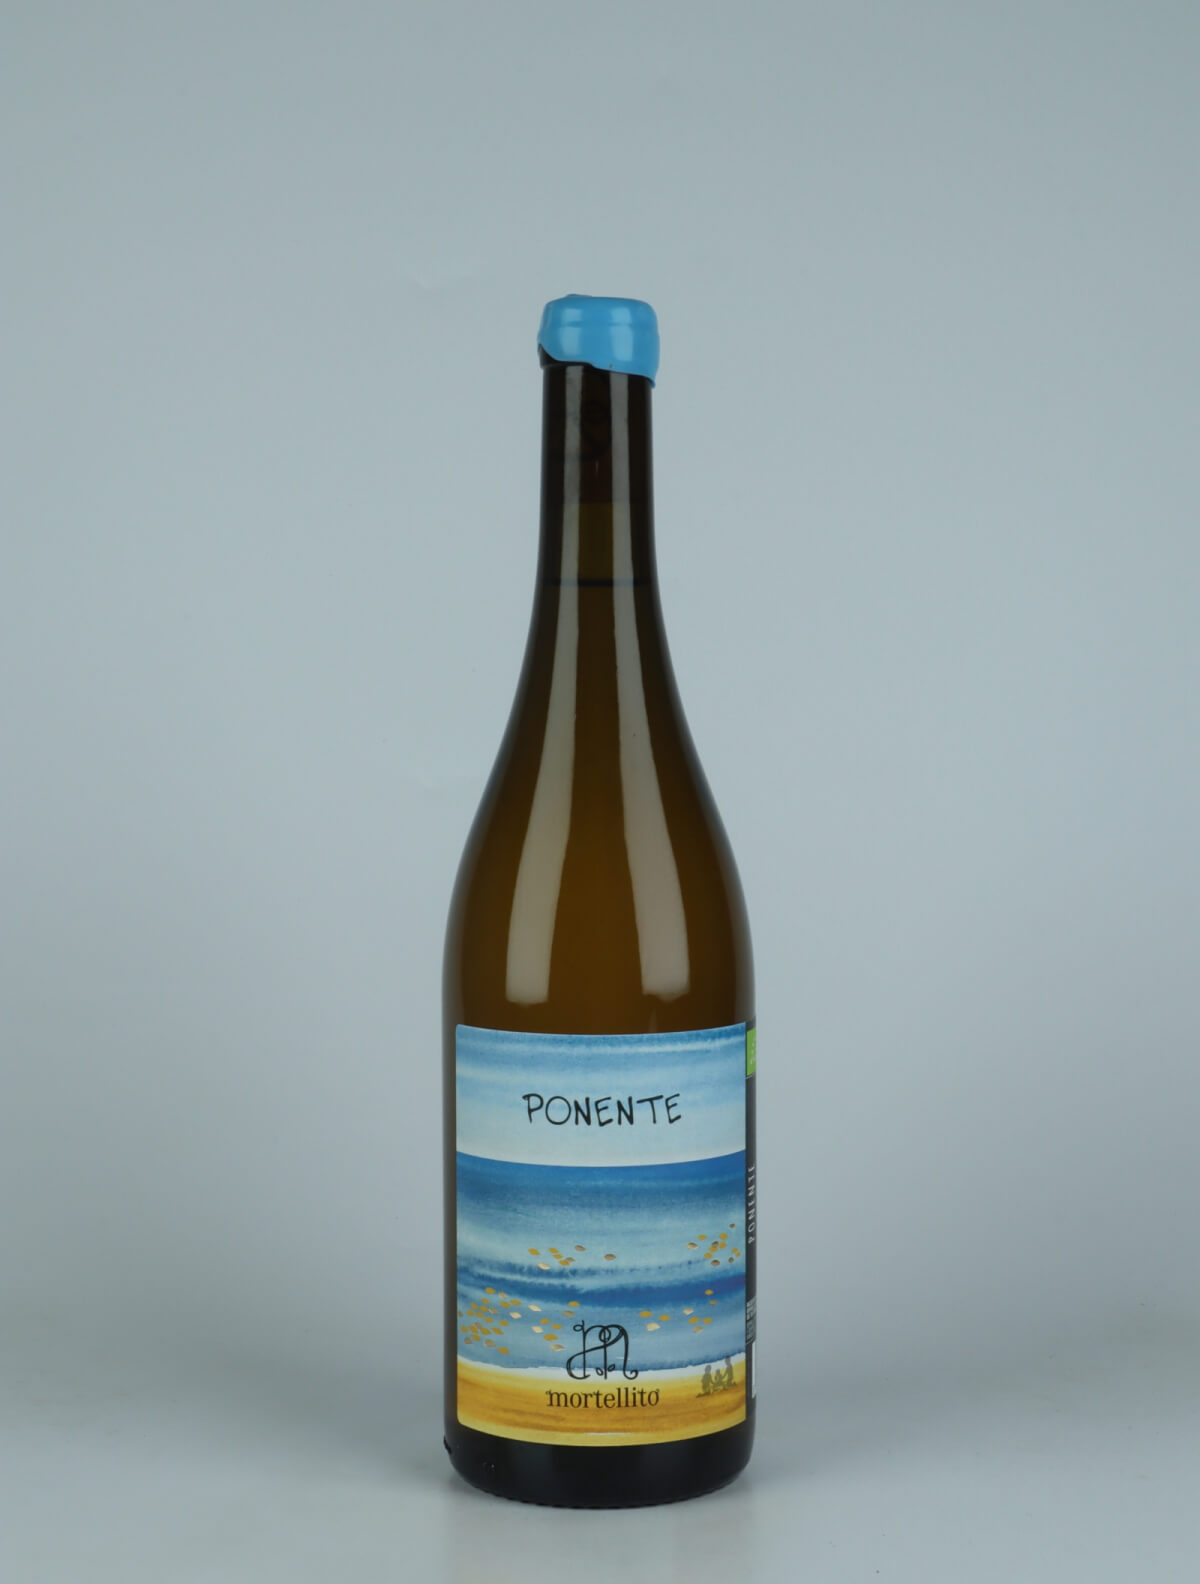 A bottle 2023 Ponente White wine from Il Mortellito, Sicily in Italy